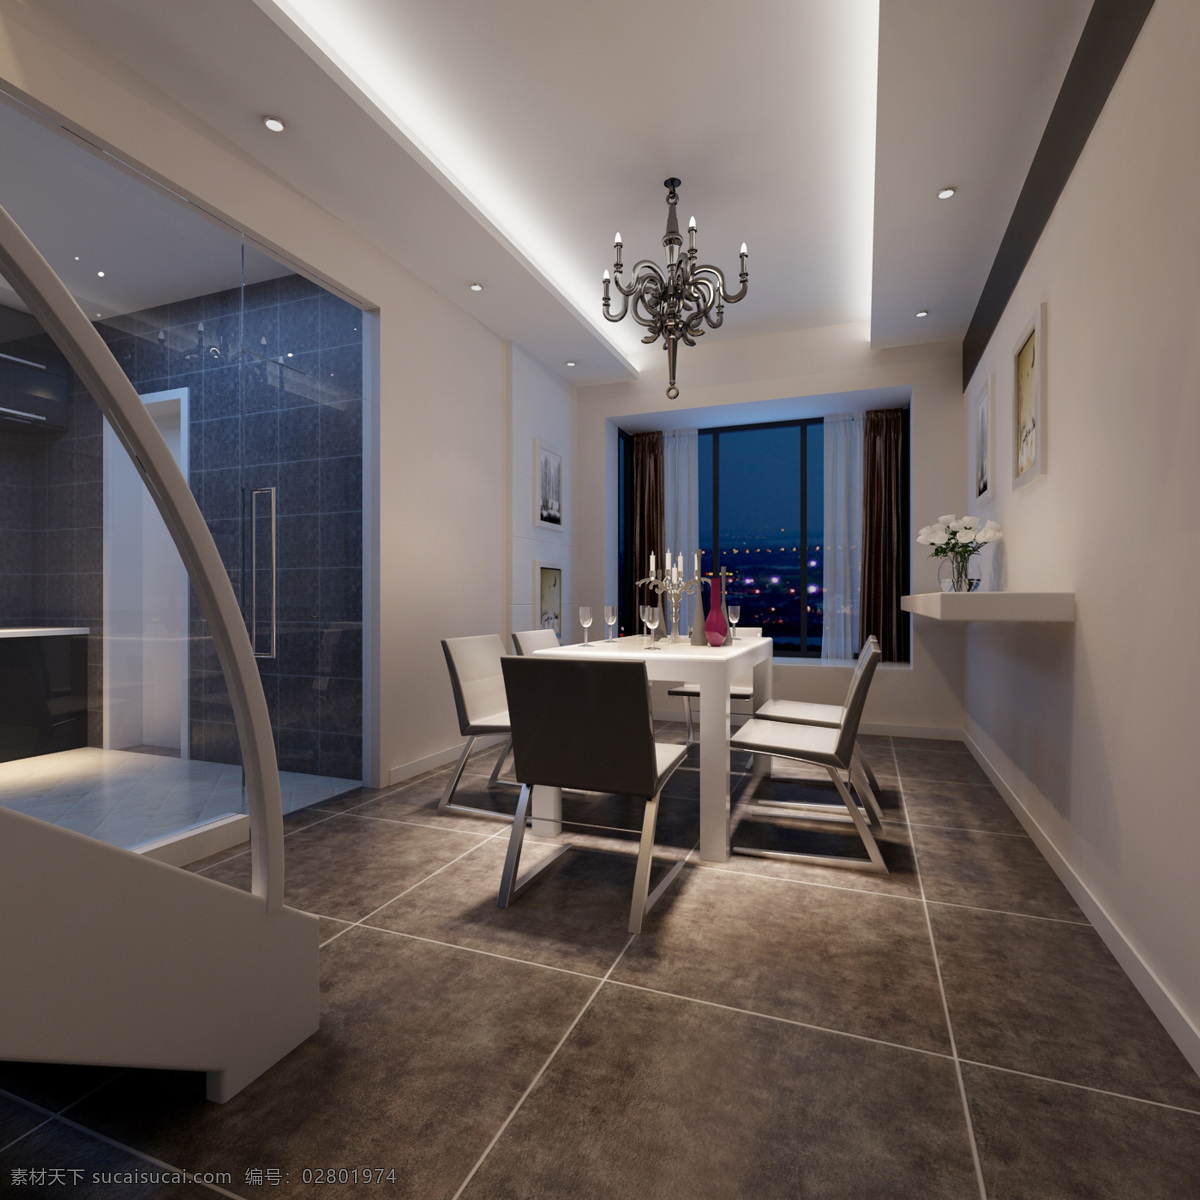 餐厅 3d 3d设计 灯光 简约 客厅 室内设计 现代 效果图 3d模型素材 其他3d模型